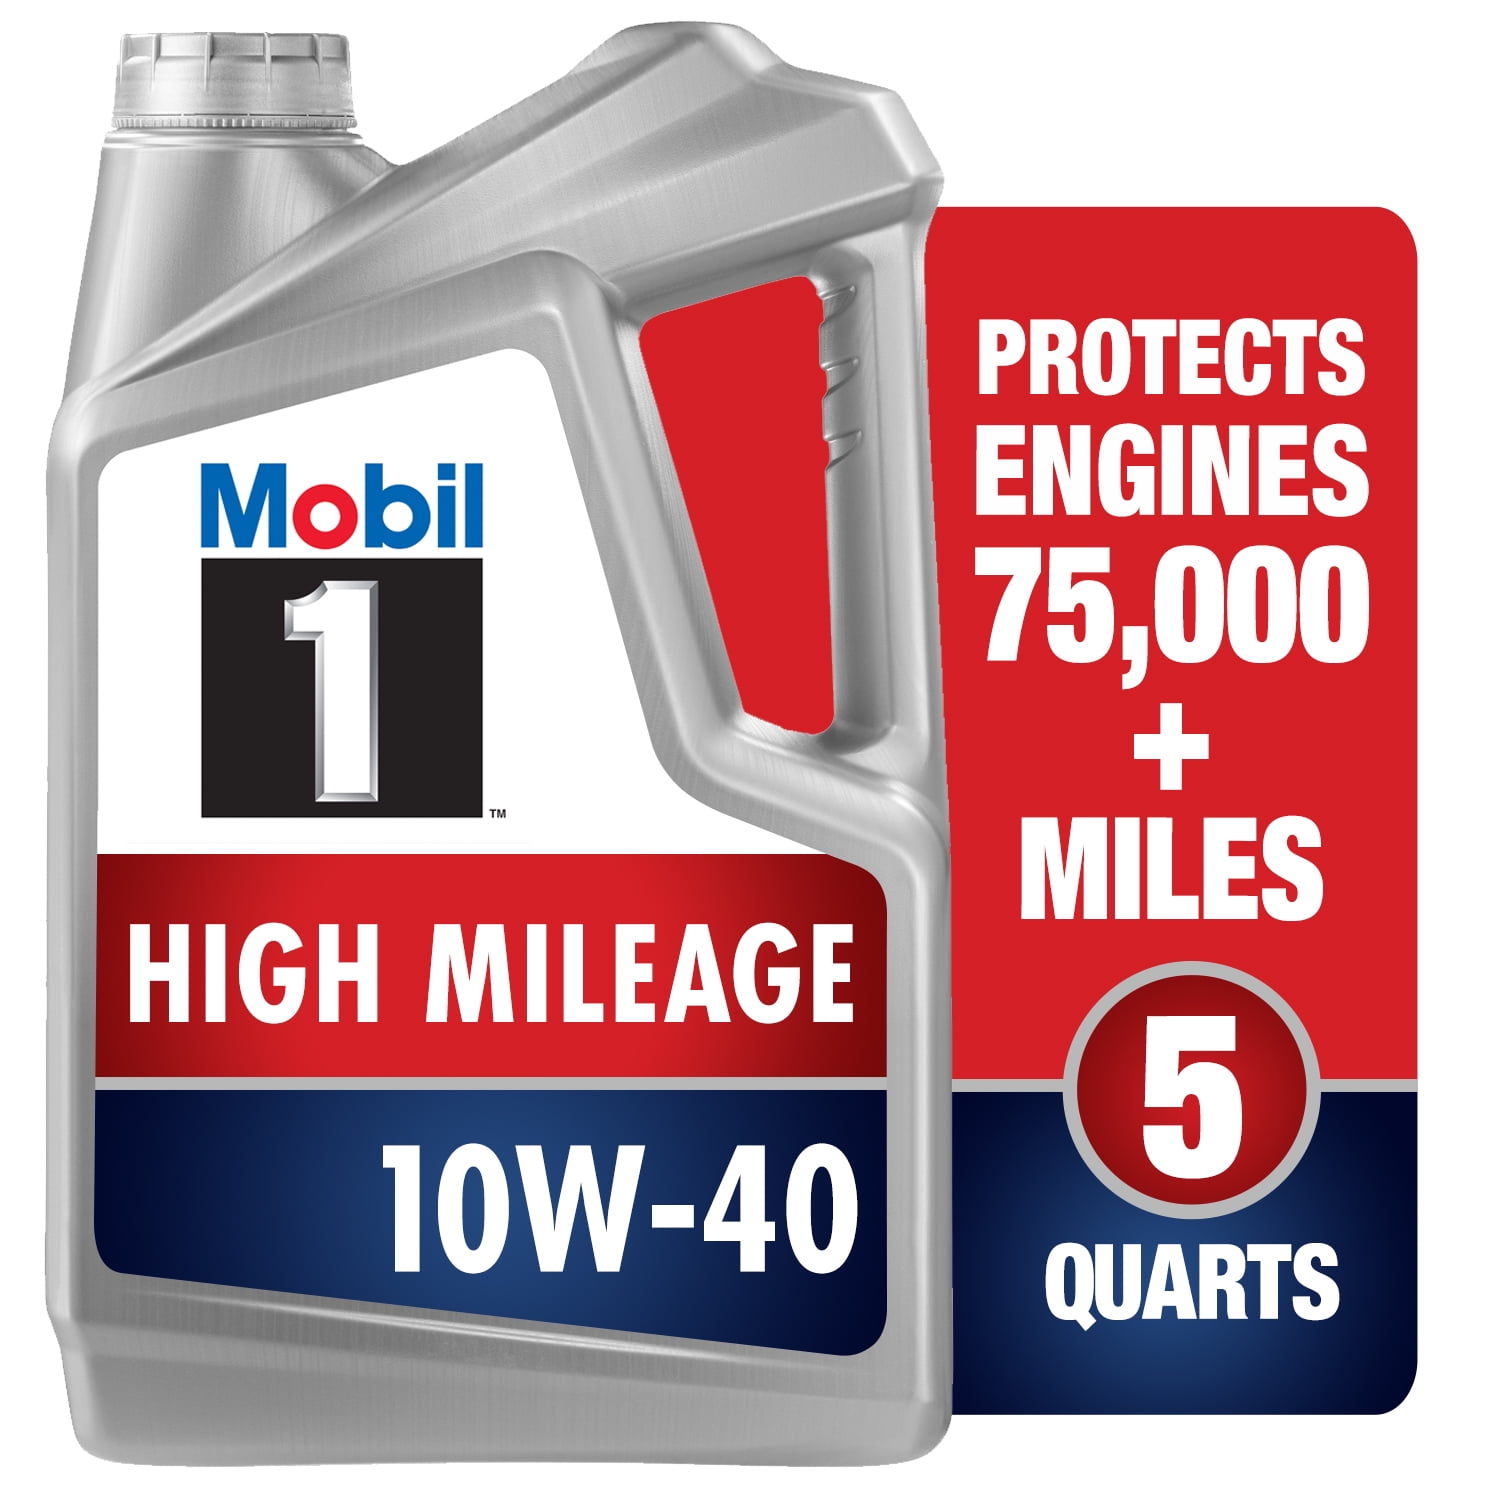 Mobil 1 Oil Workshop Garage Banner 